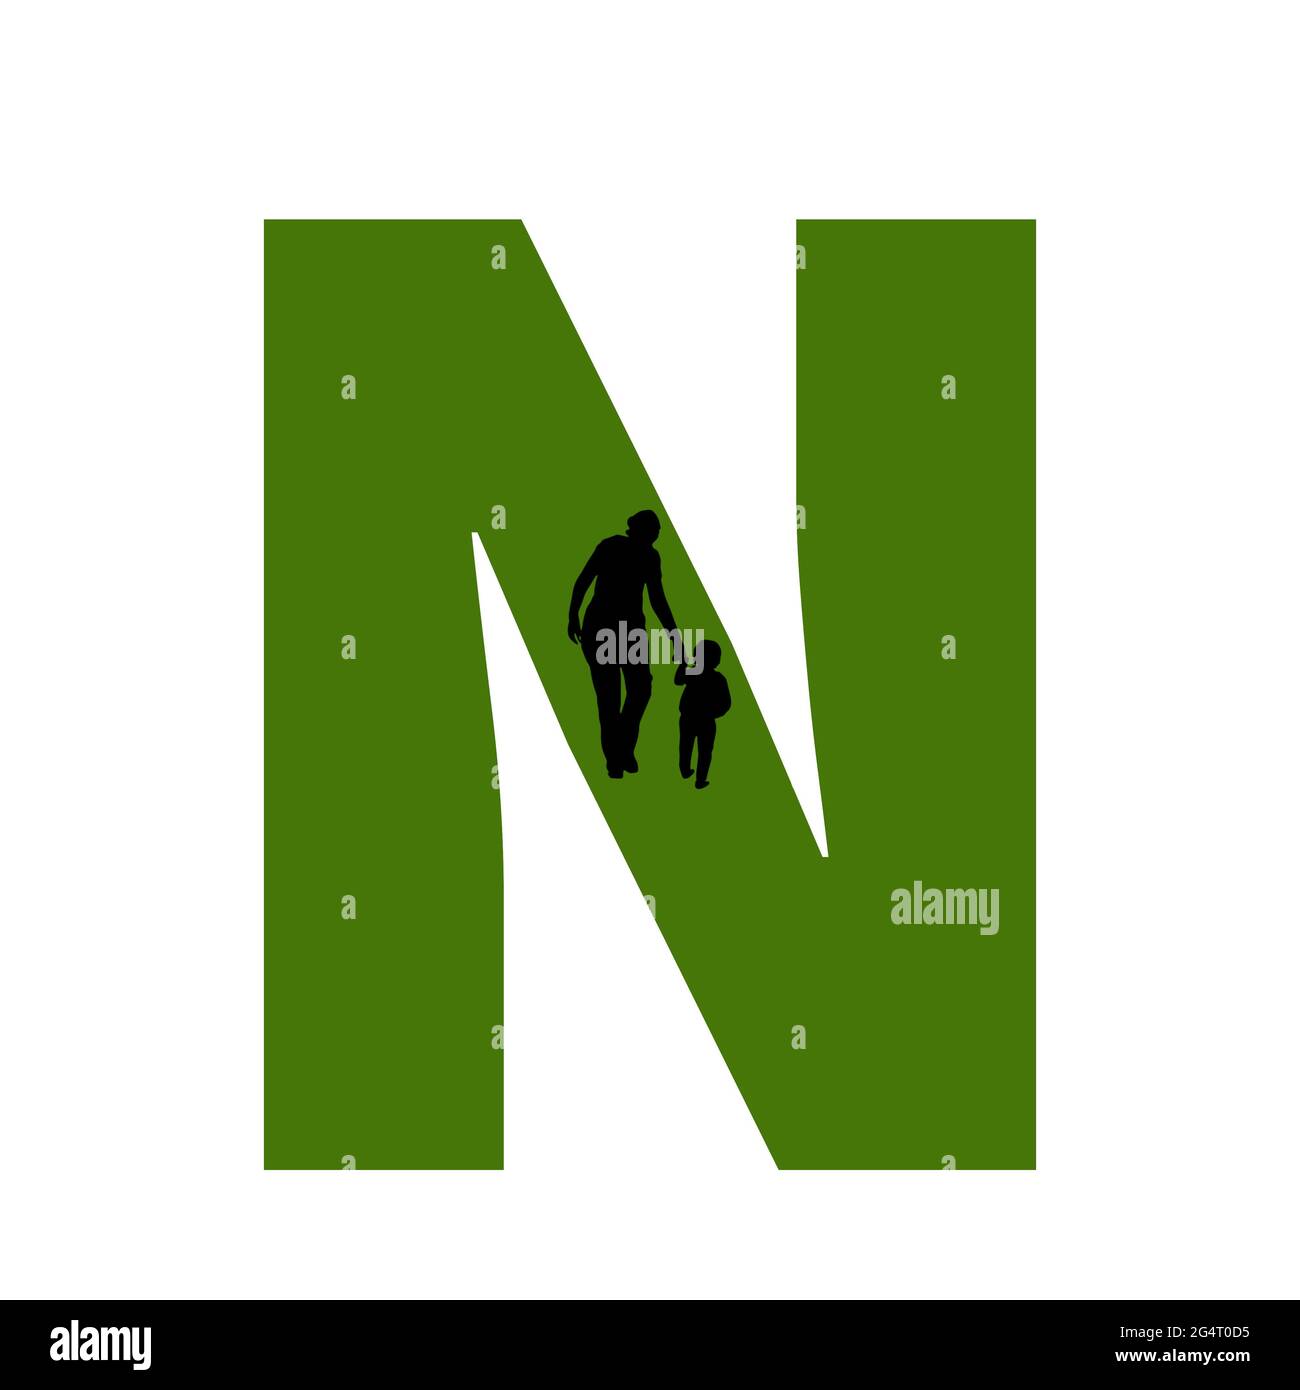 Lettre N de l'alphabet avec silhouette d'une mère et d'un enfant marchant, en vert et noir Banque D'Images